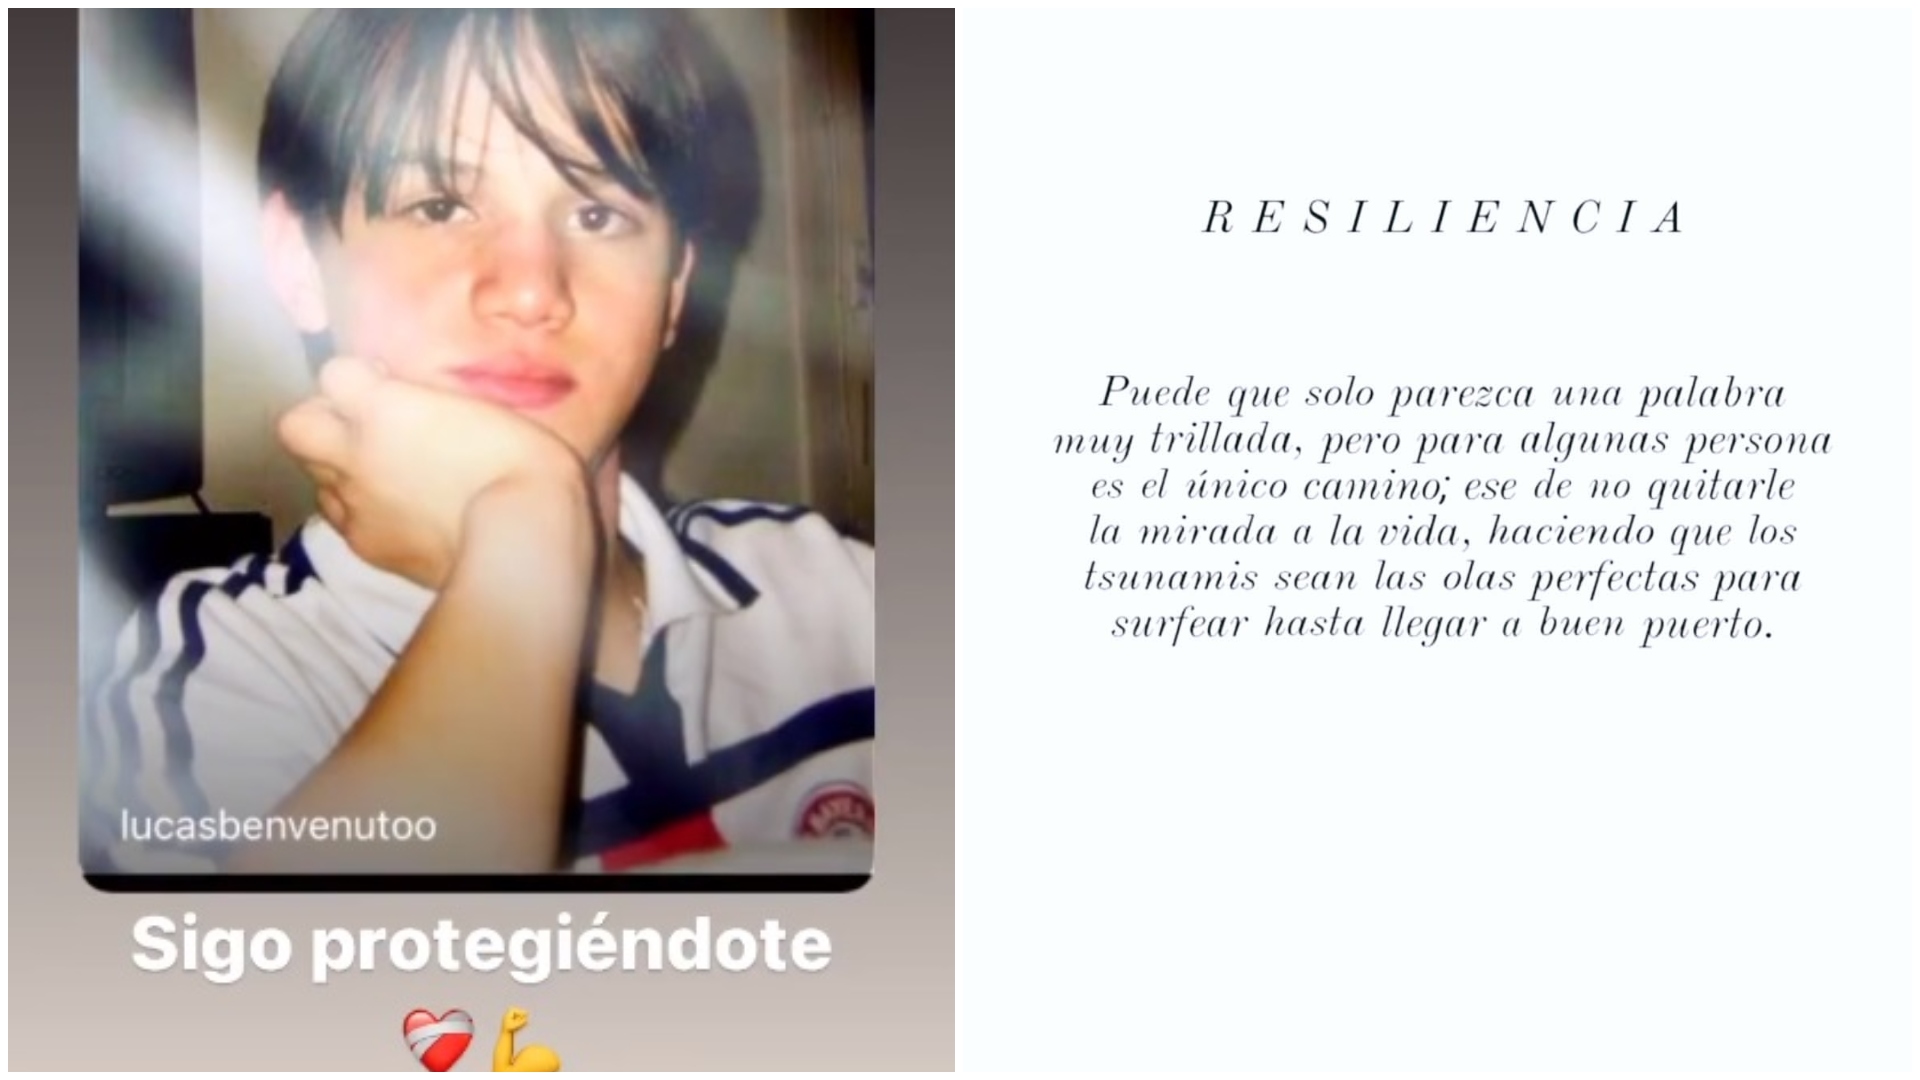 Lucas Benvenuto también compartió una carta que le escribió al niño que fue y compartió el significado de la palabra "resiliencia"